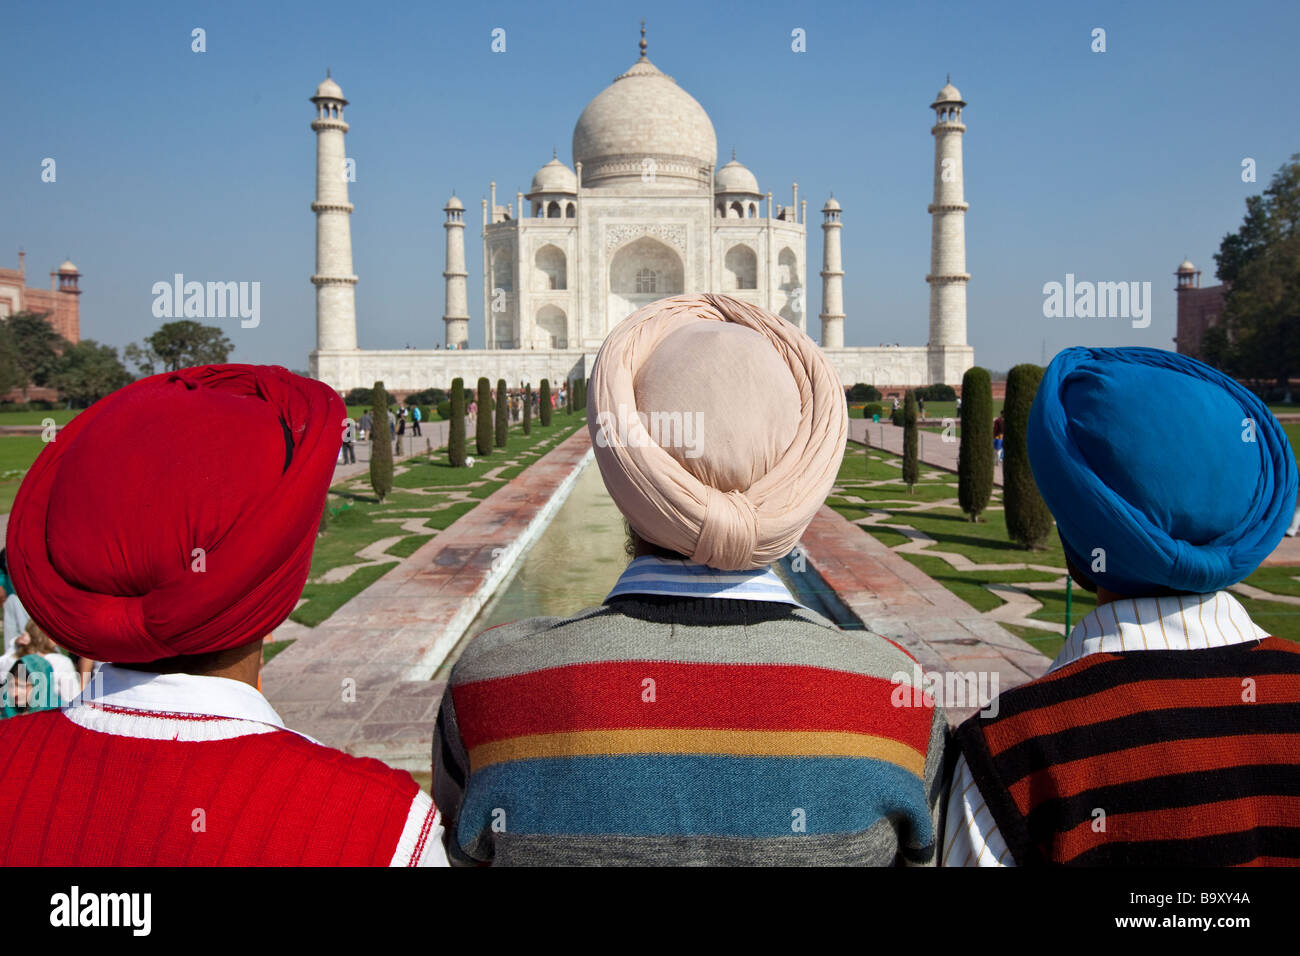 Drei indische Sikh-Männer im Taj Mahal in Agra Indien Stockfoto